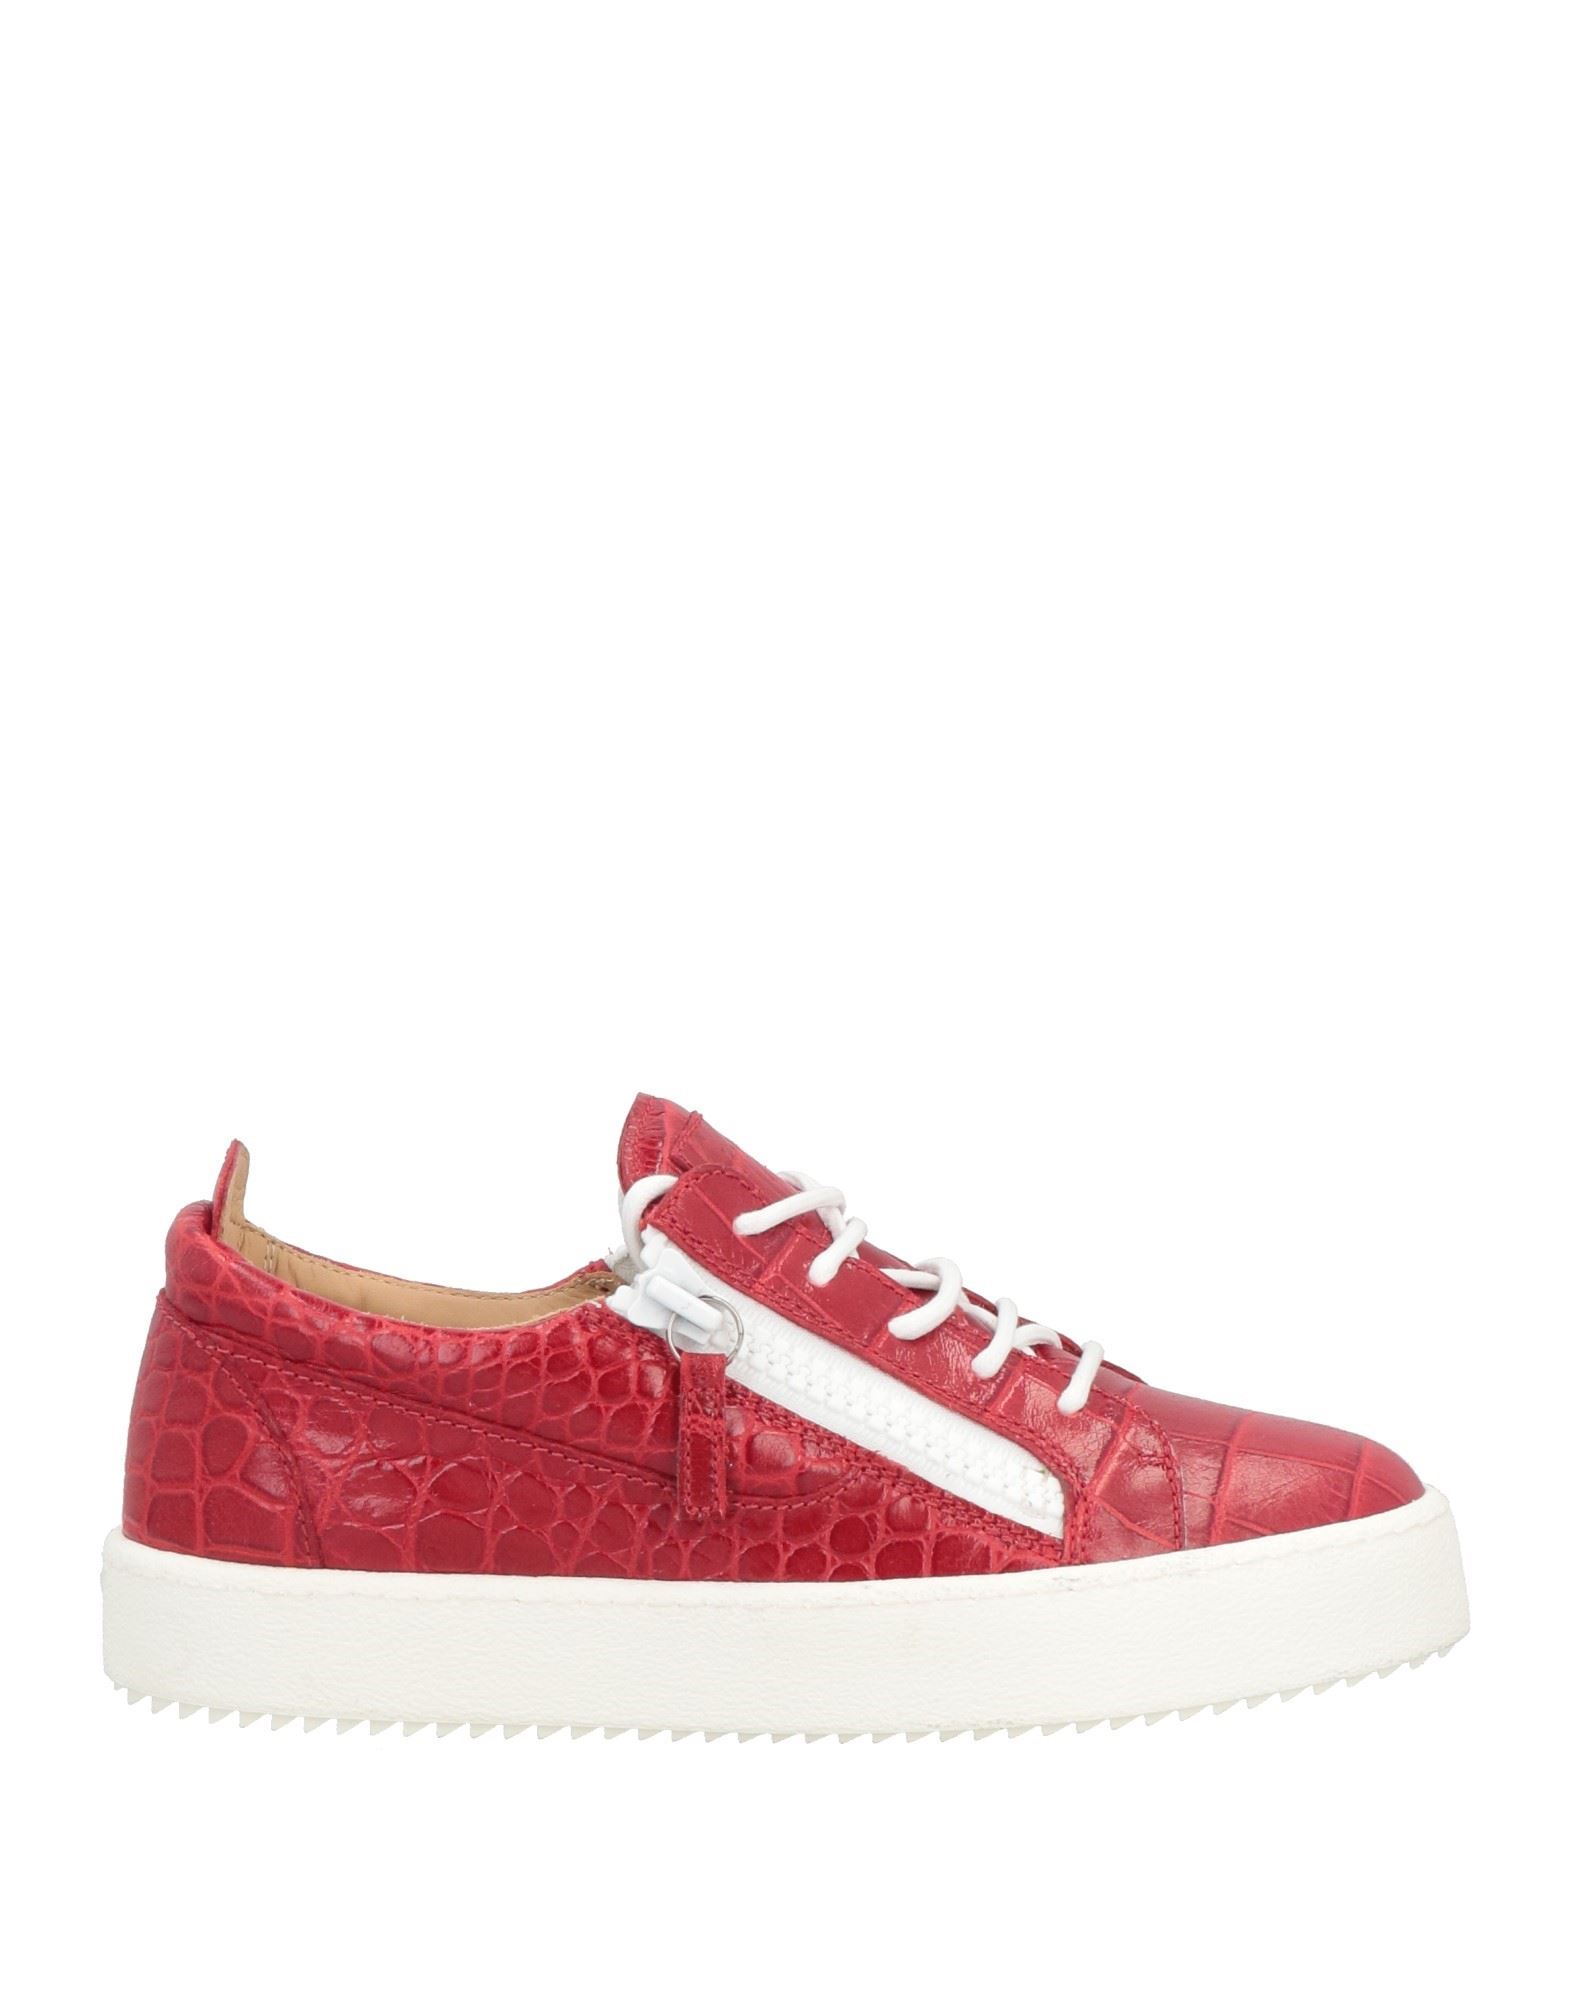 Giuseppe Zanotti Sneakers In Red